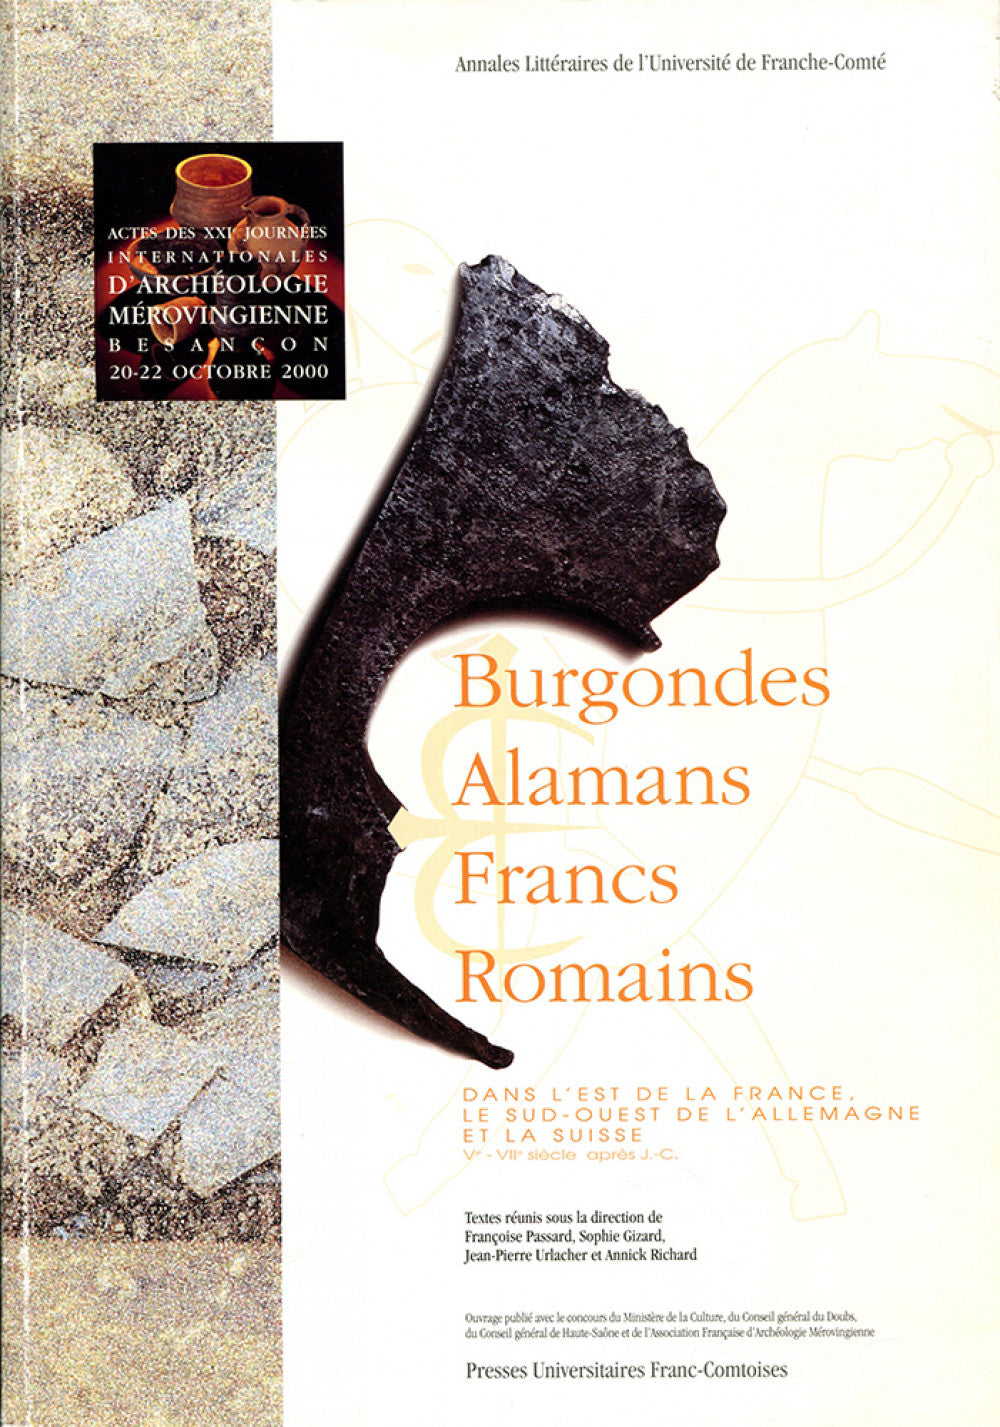 Burgondes, Alamans, Francs, Romains dans l'est de la France, le sud-ouest de l'Allemagne et la Suisse, Ve-VIIe siècle après J.C.